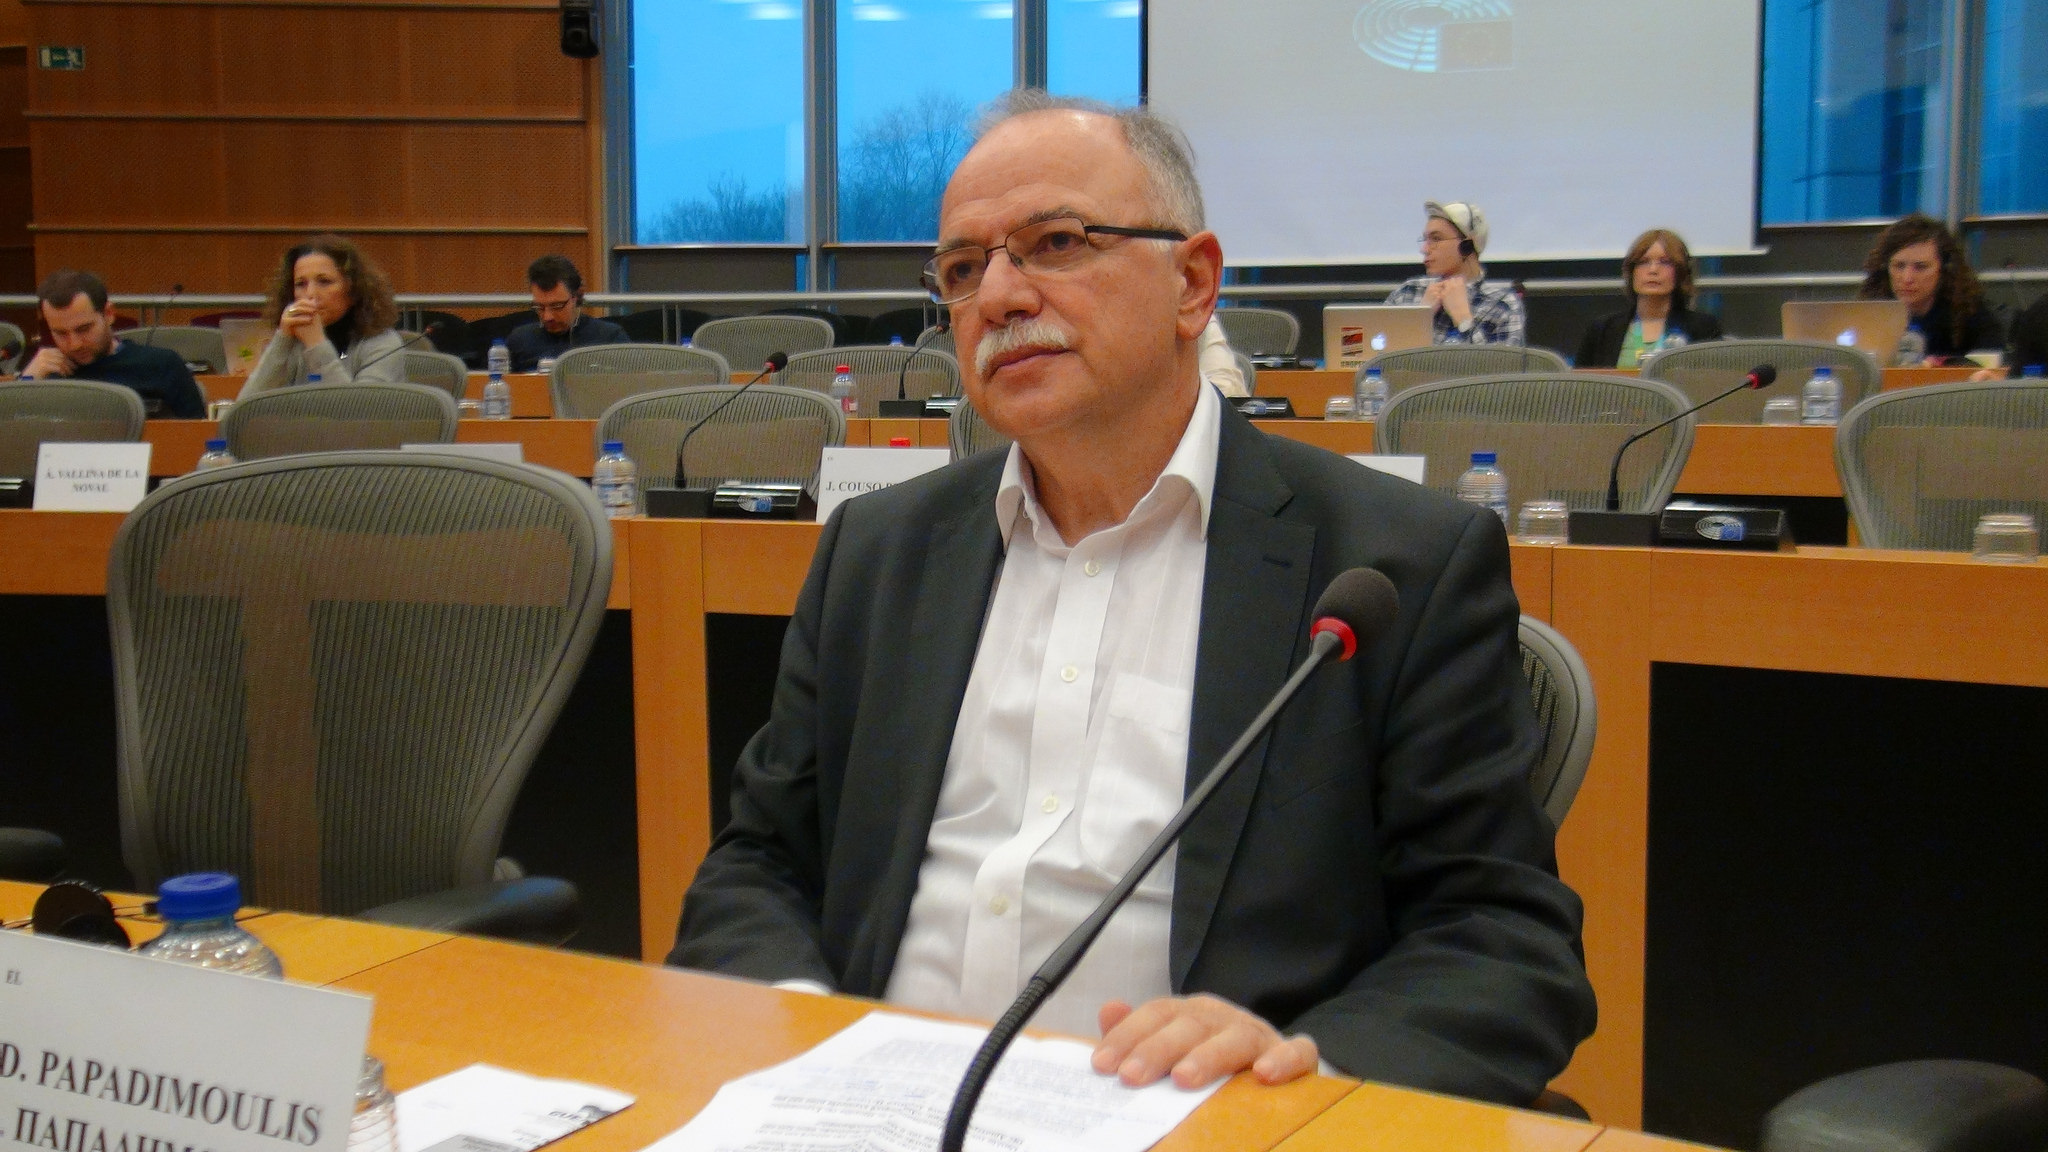 Δημ. Παπαδημούλης: Η νέα κινητικότητα για λύση στο θέμα των Σκοπίων είναι θετική και πρέπει να την αξιοποιήσουμε